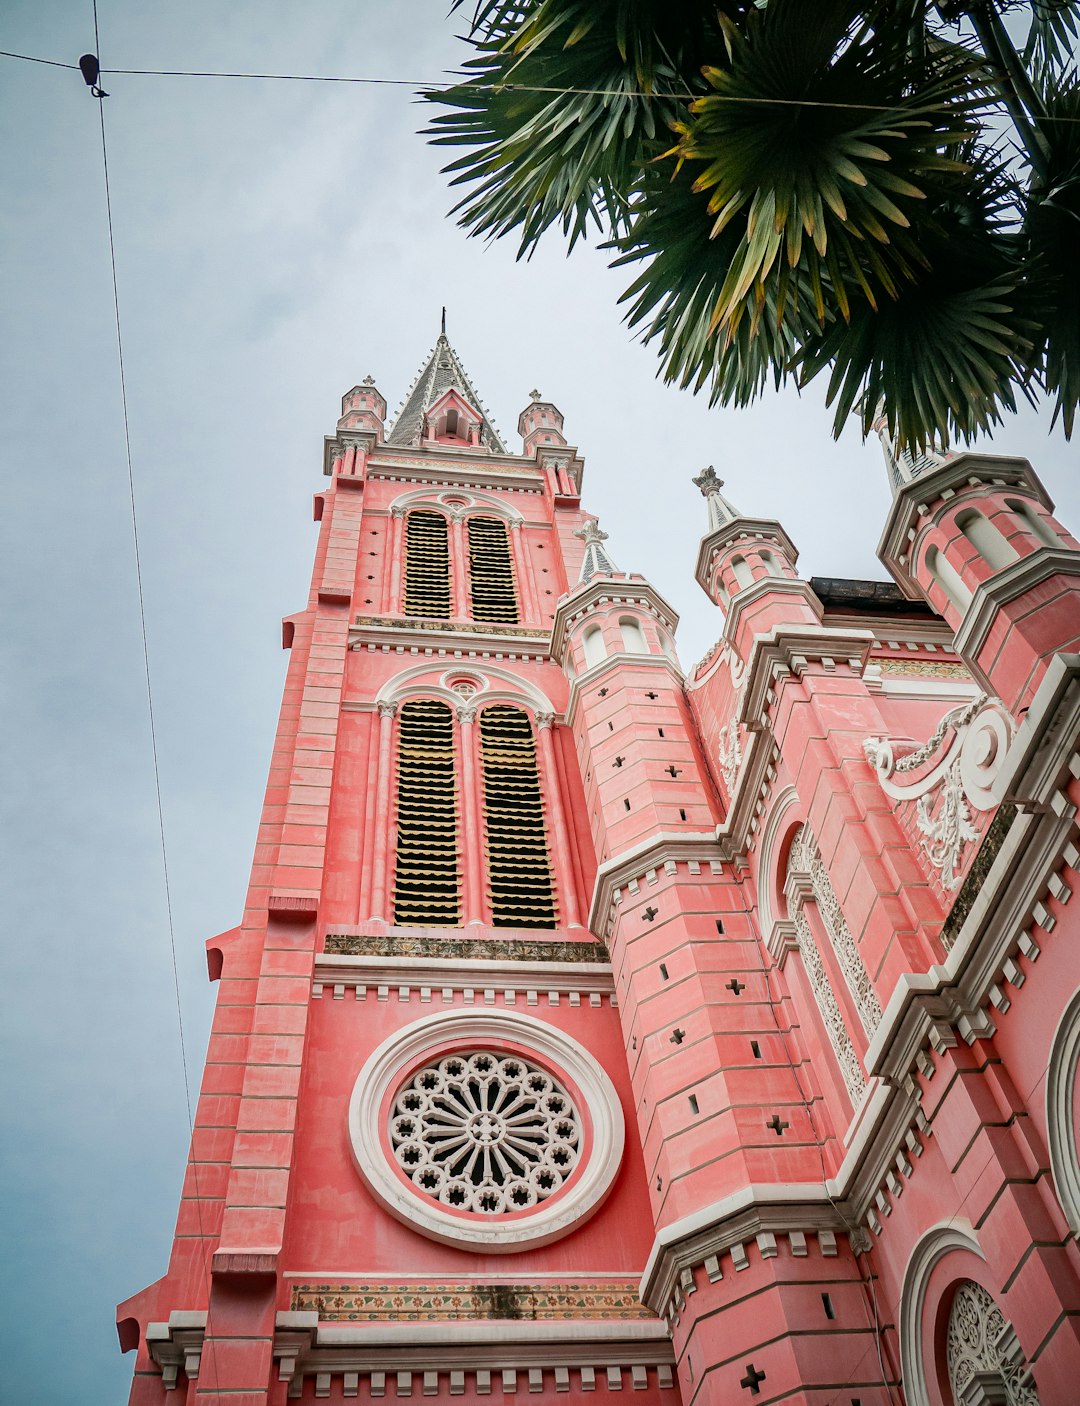 Landmark photo spot Nhà thờ Tân Định Notre Dame Cathedral of Saigon